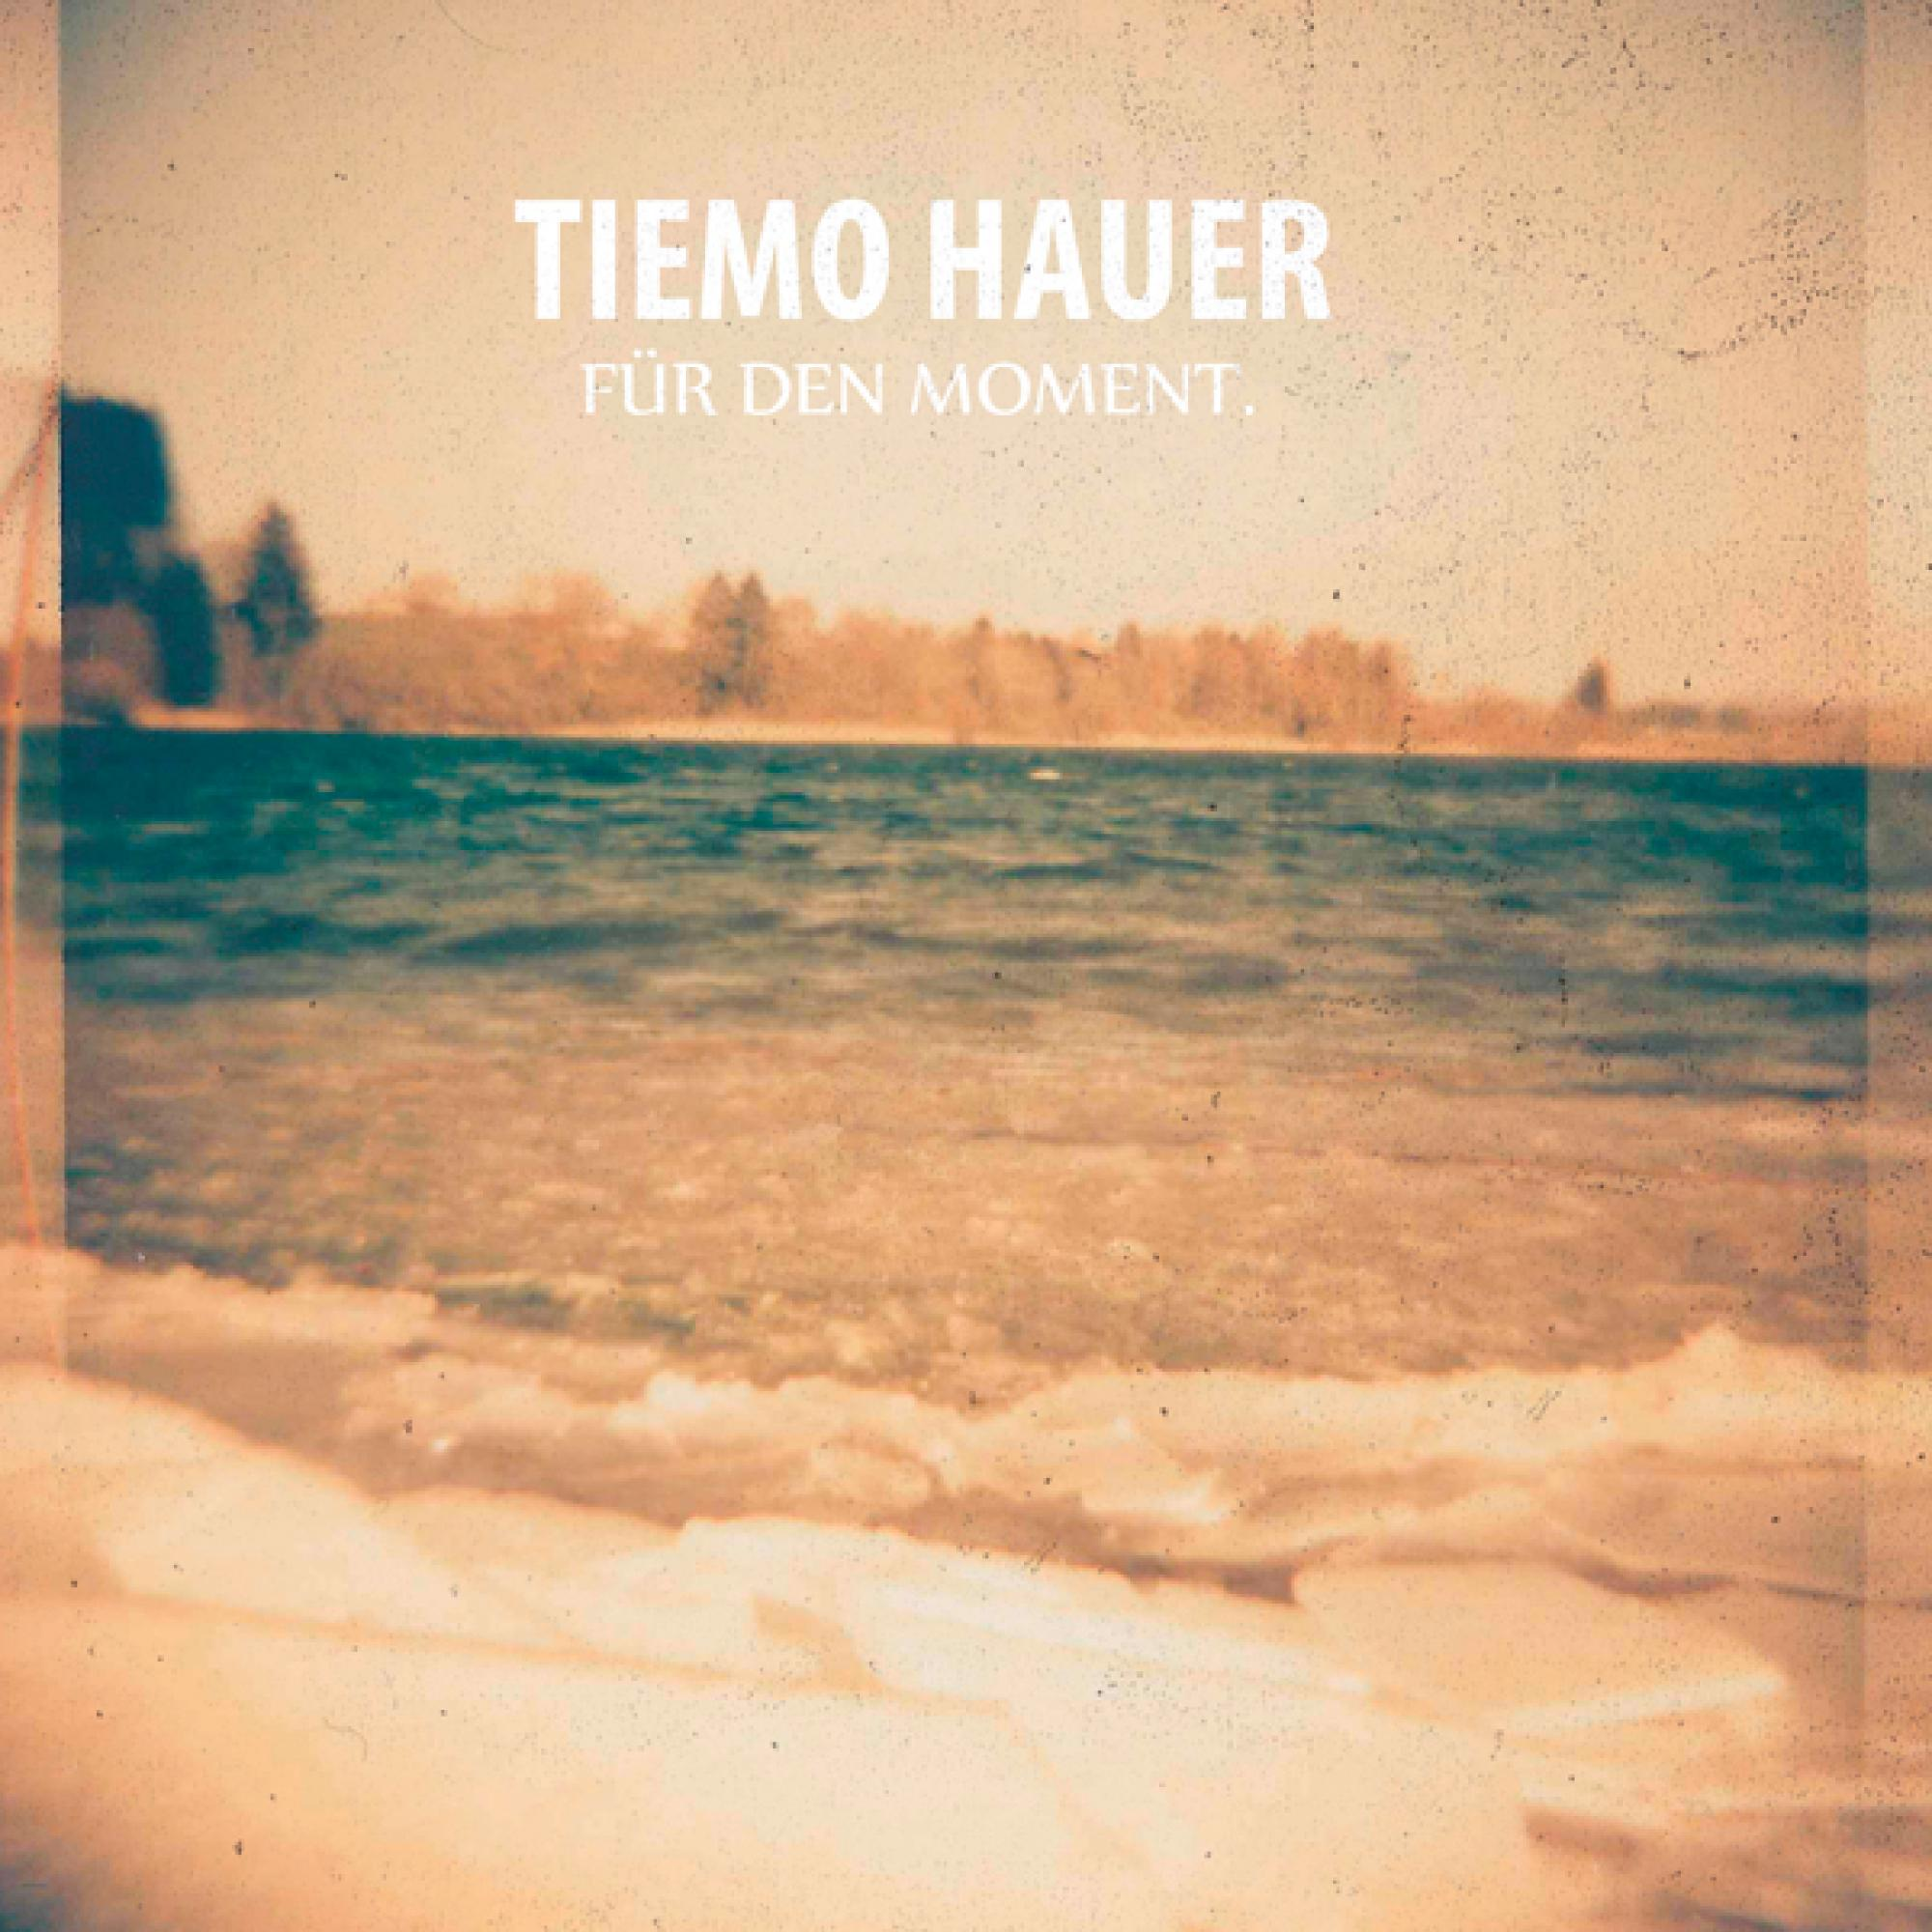 Tiemo Hauer (CD) Den - - Für Moment